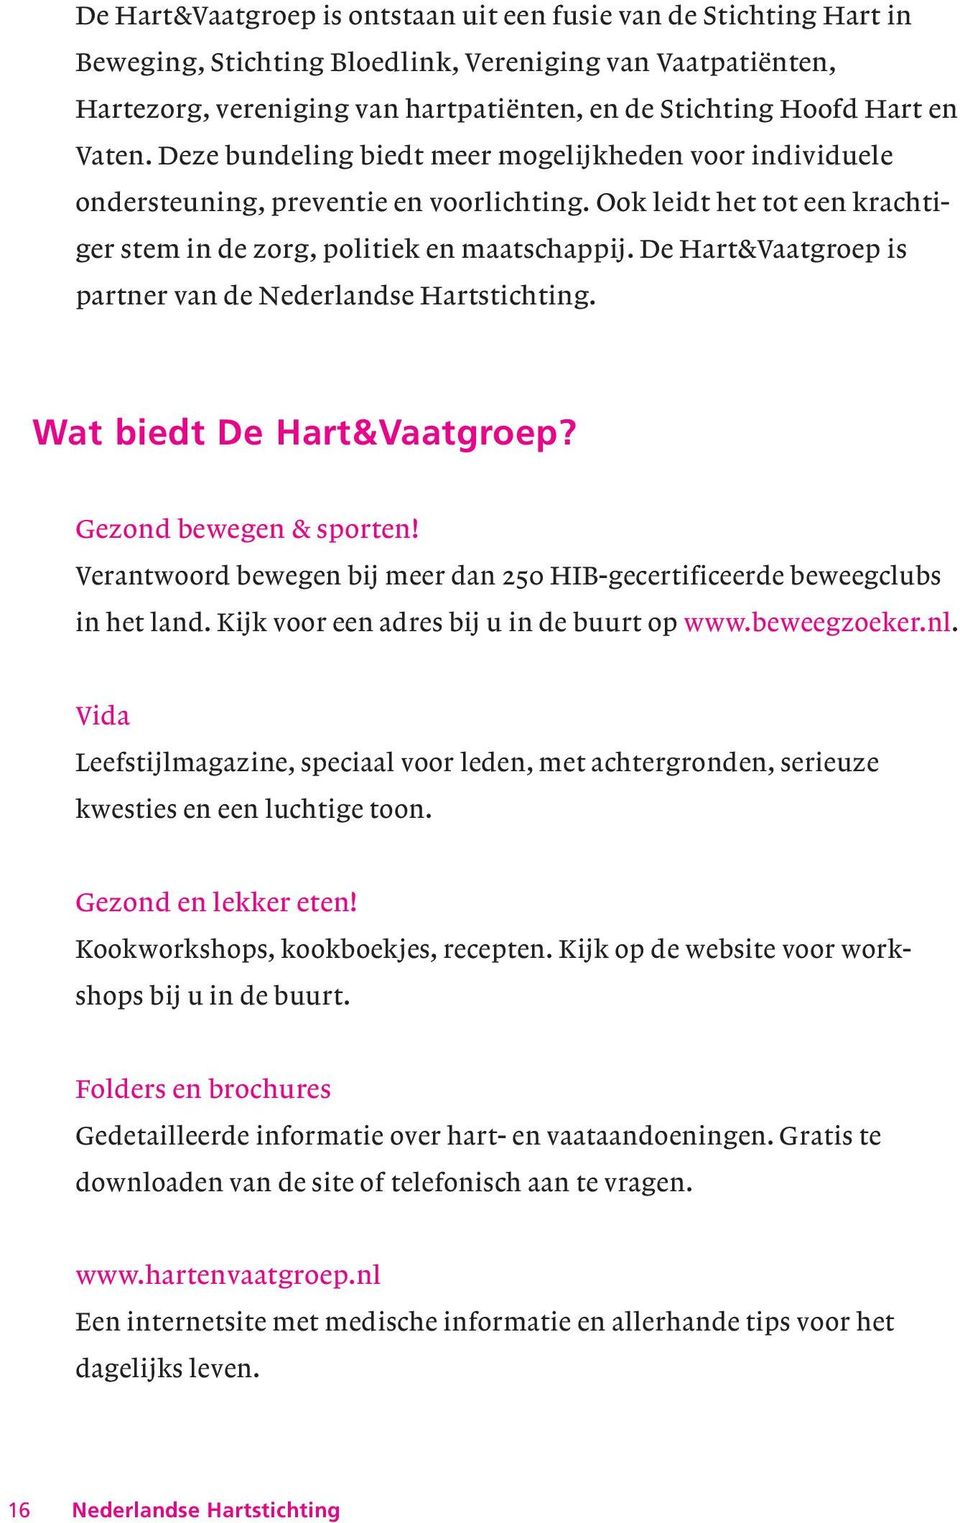 De Hart&Vaatgroep is partner van de Nederlandse Hartstichting. Wat biedt De Hart&Vaatgroep? Gezond bewegen & sporten! Verantwoord bewegen bij meer dan 250 HIB-gecertificeerde beweegclubs in het land.